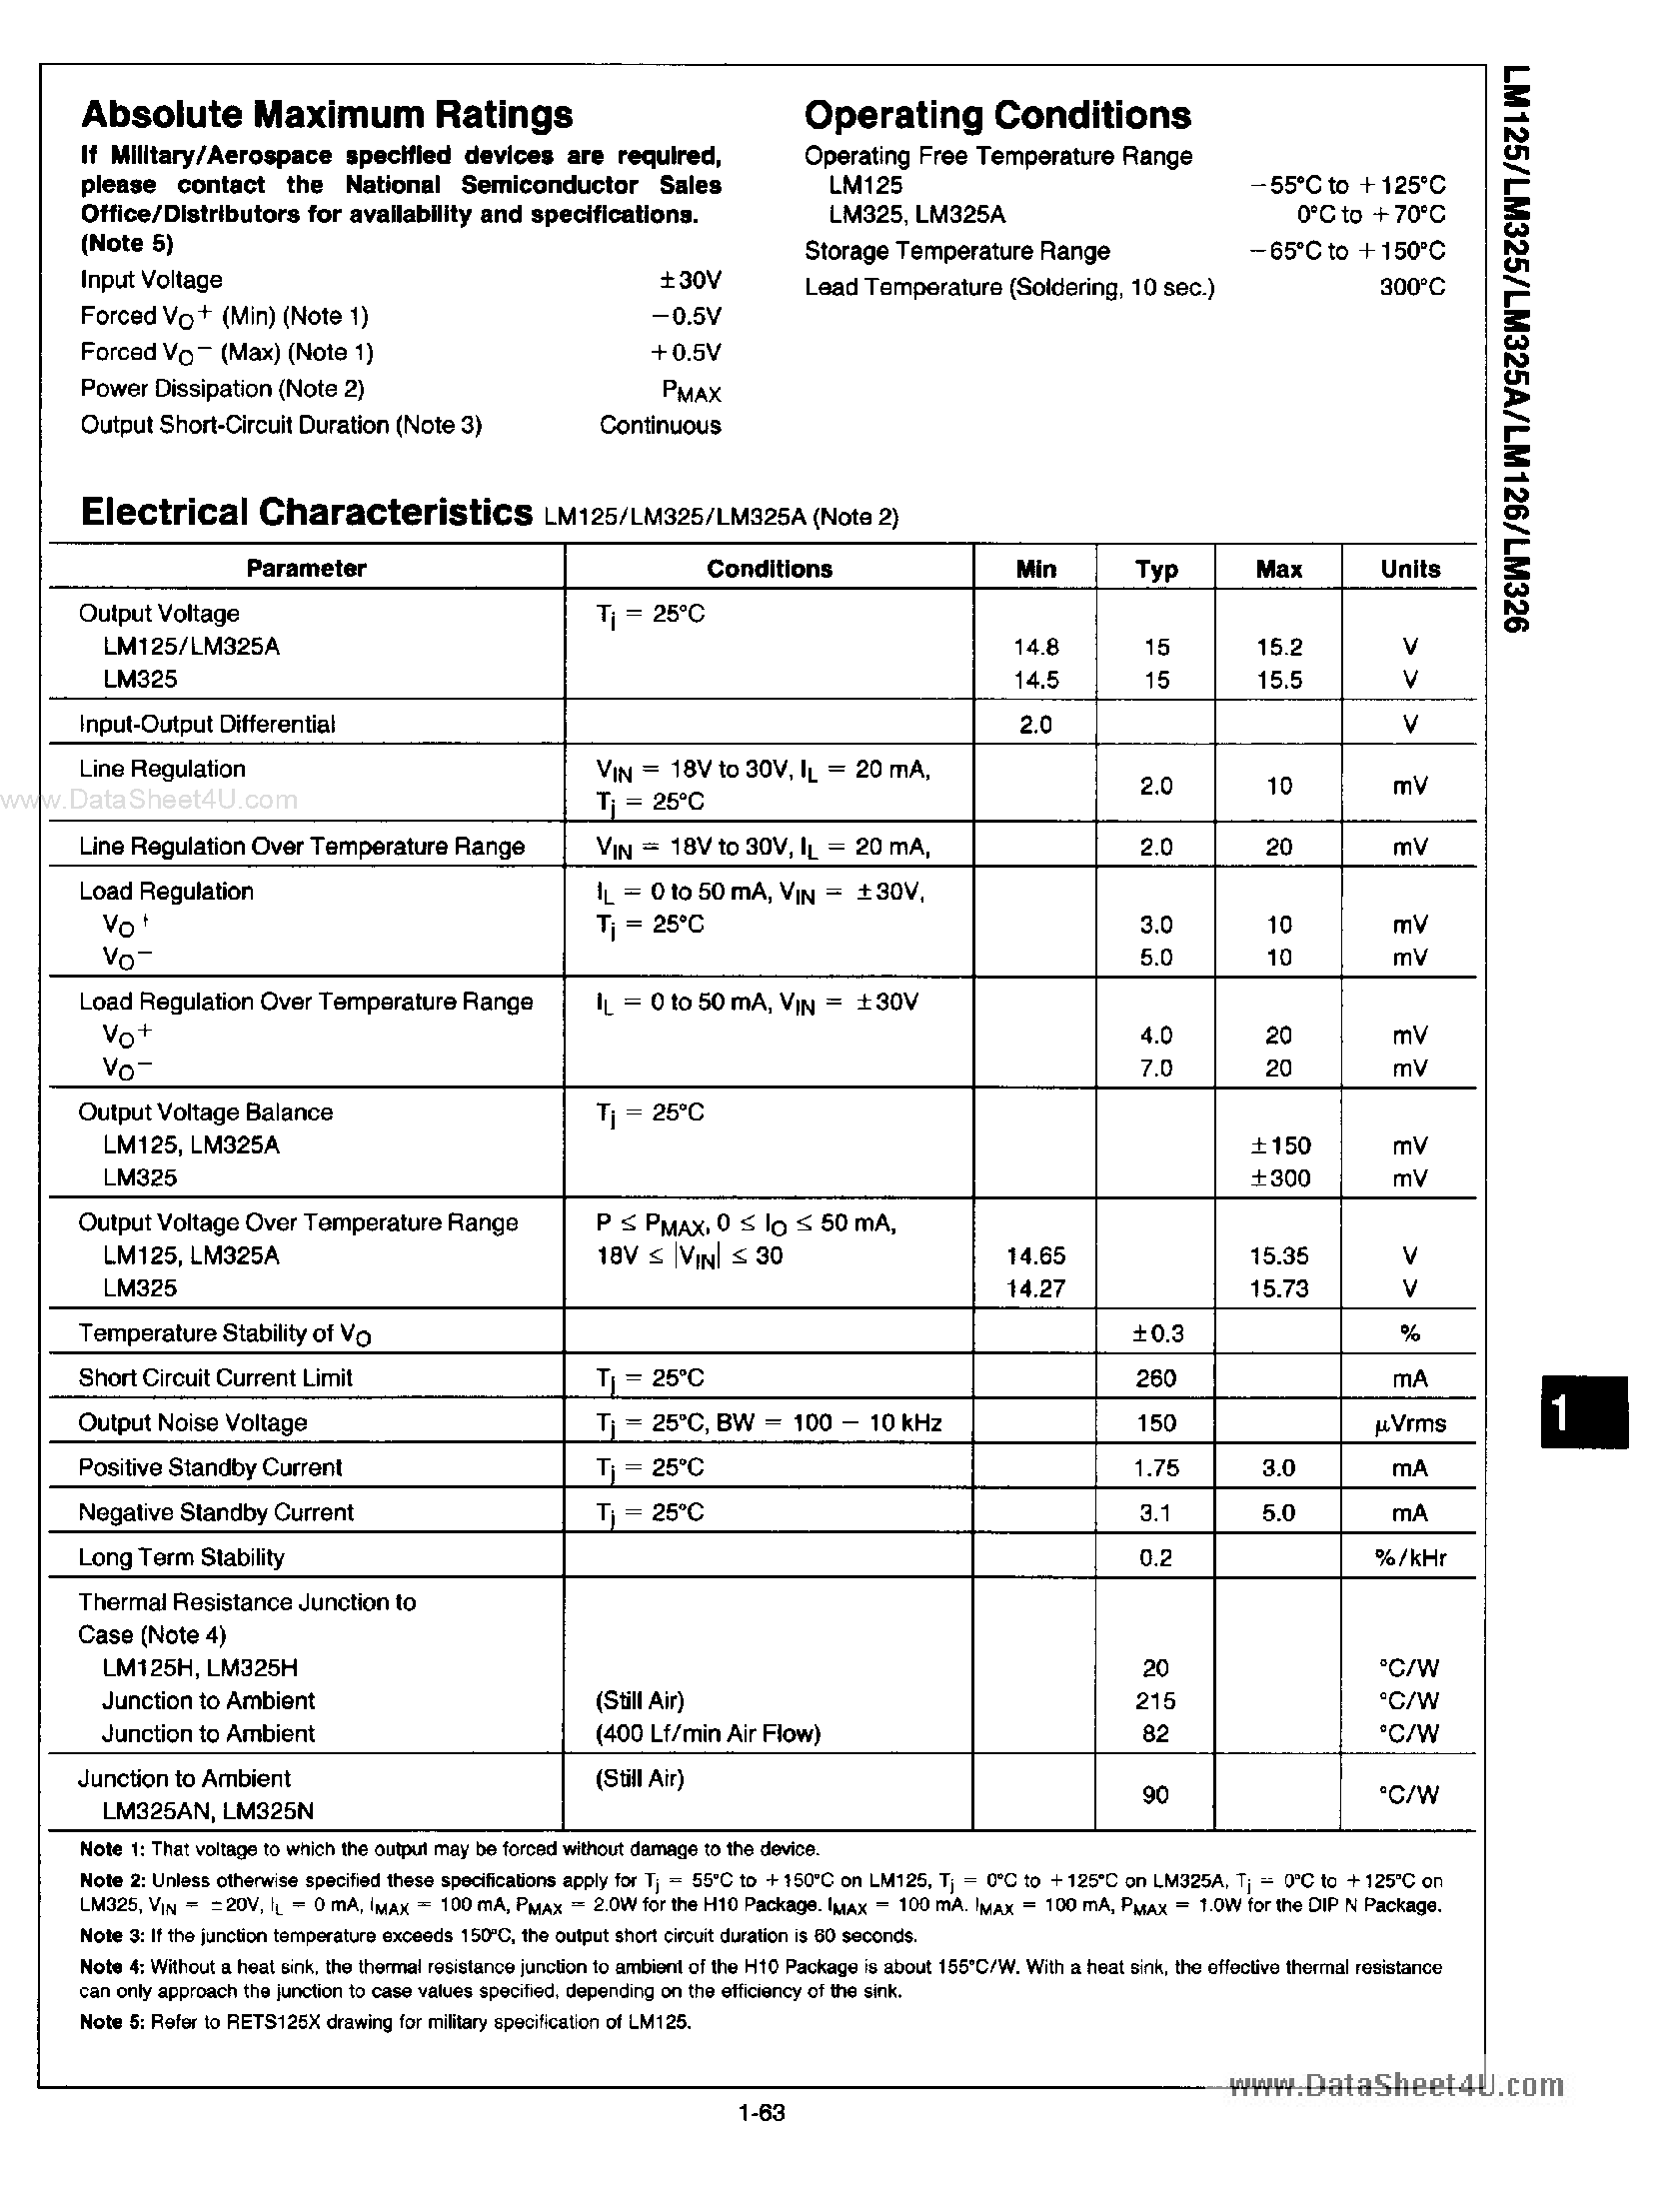 Datasheet LM125 - (LM125 / LM126) VOLTAGE REGULATORS page 2